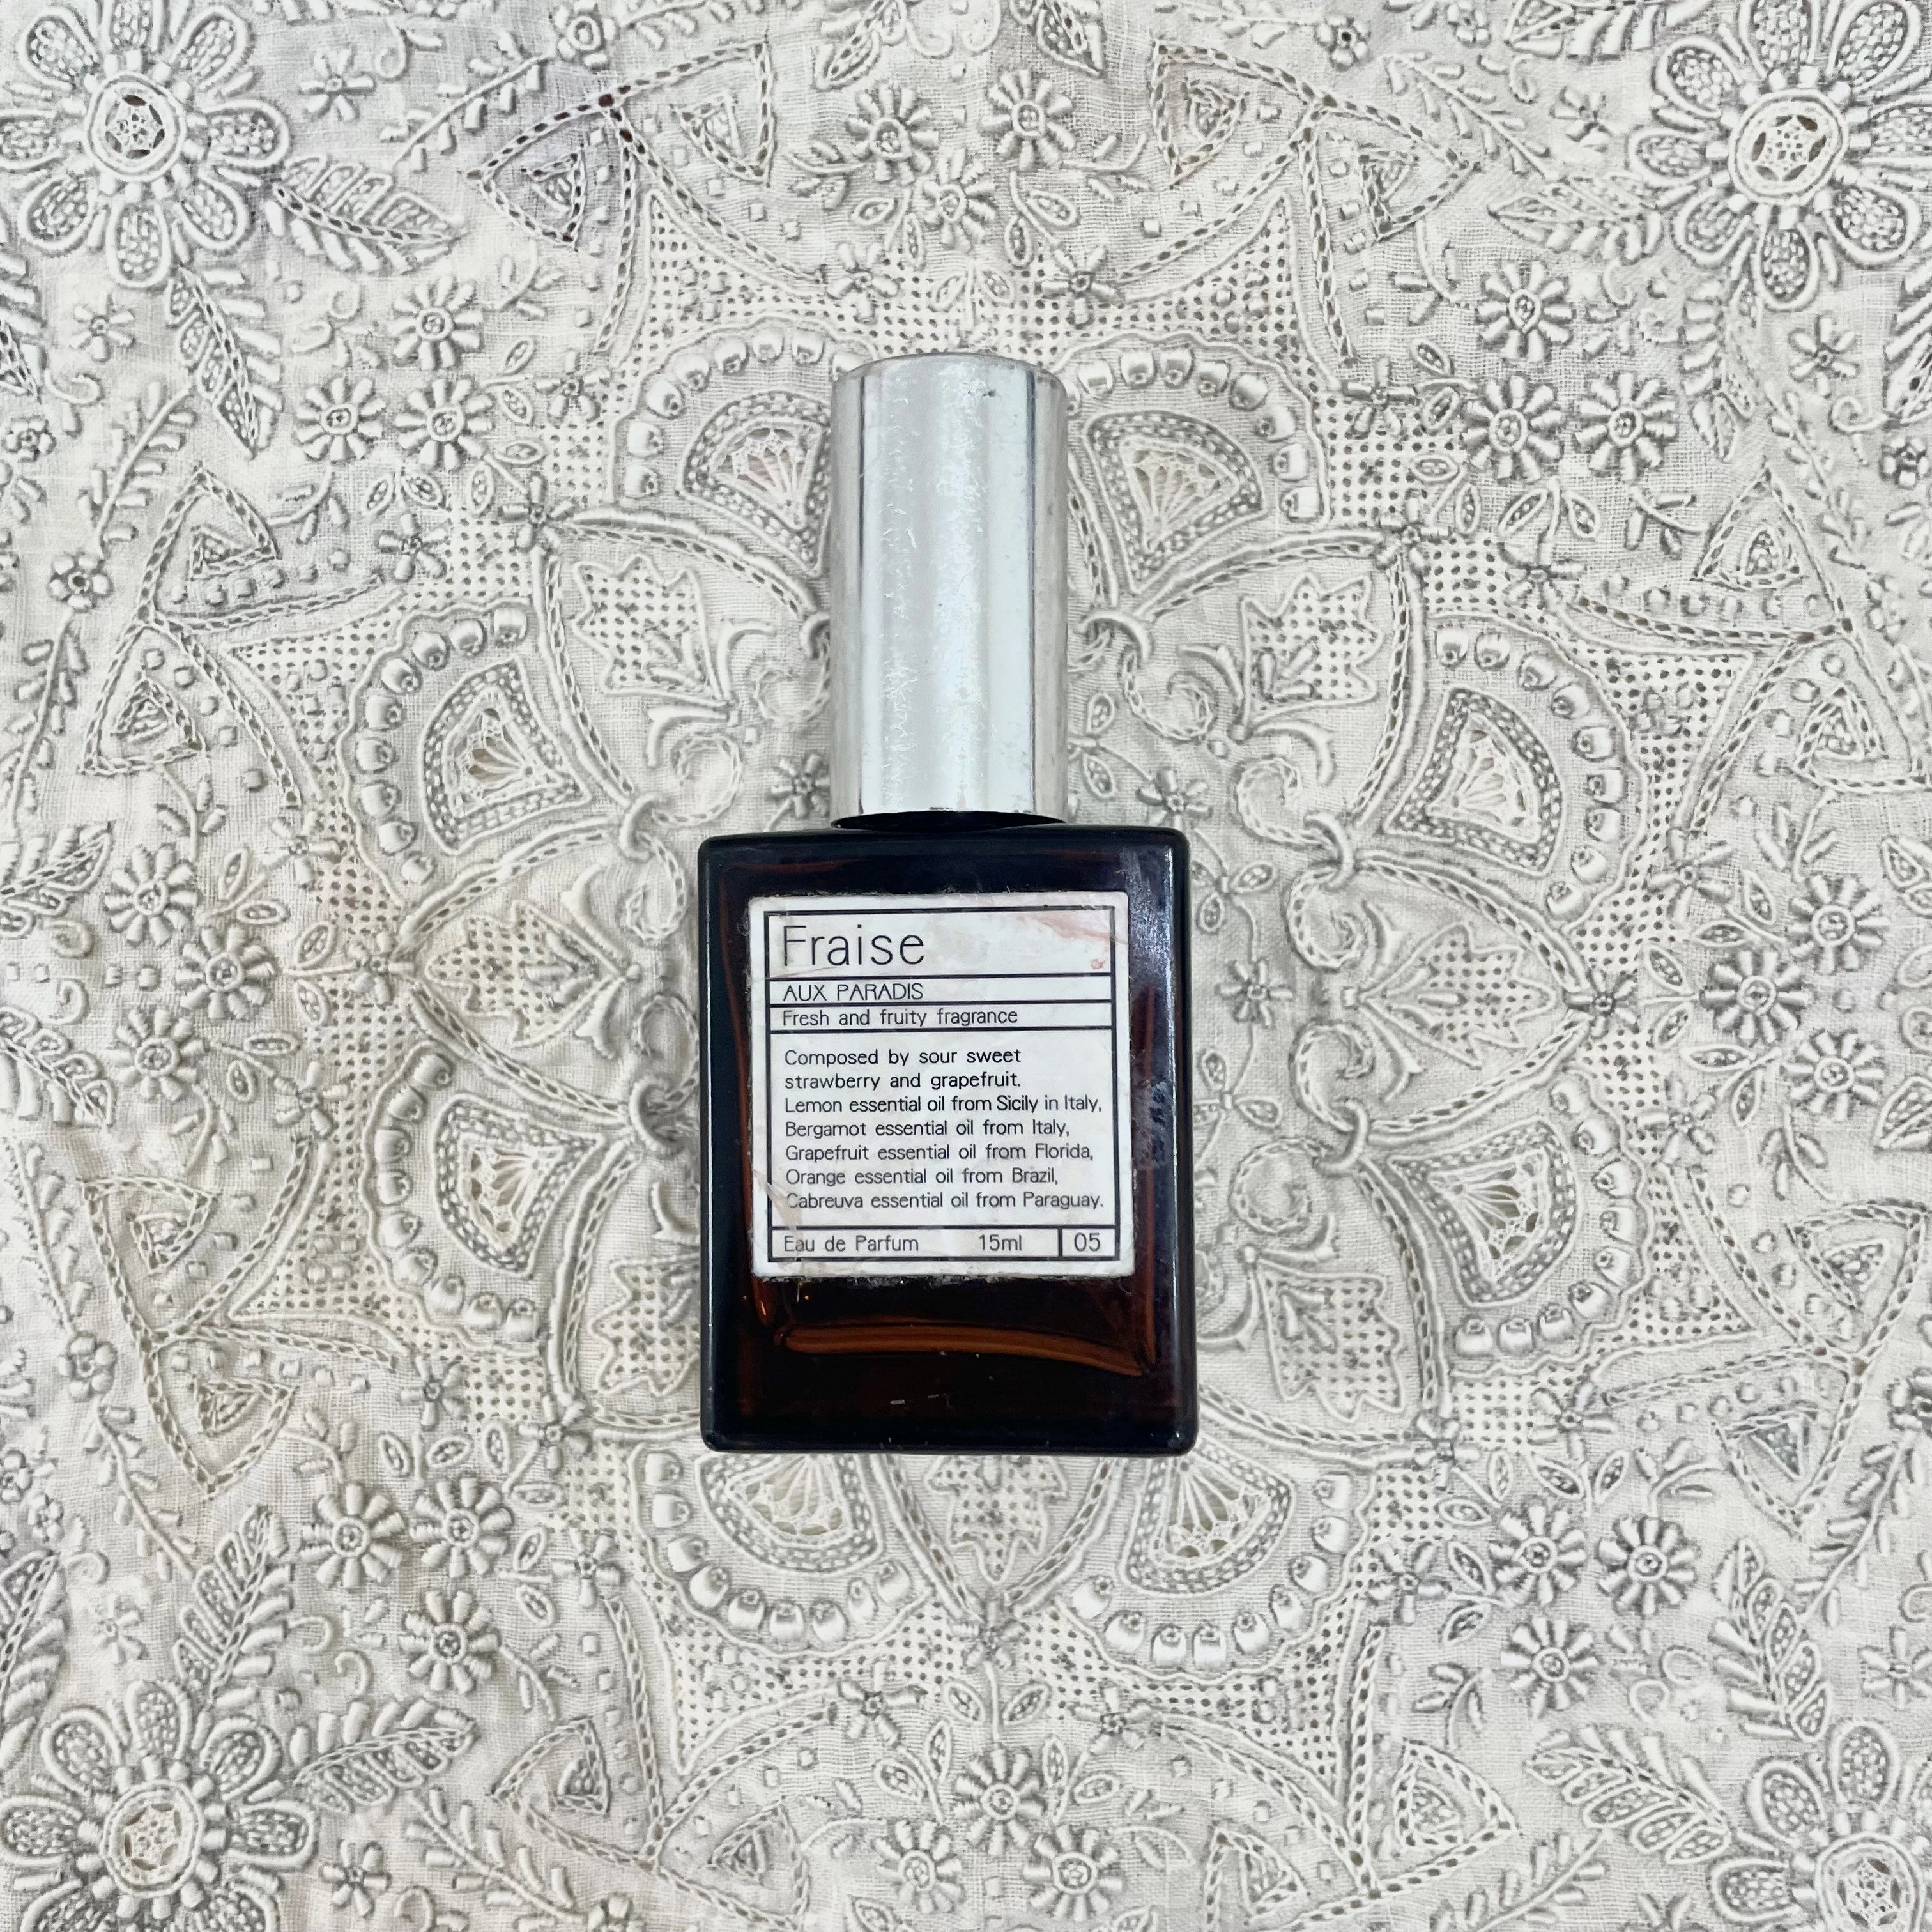 AUX PARADIS(オゥパラディ）の香水。茶色のボトルがおしゃれ。